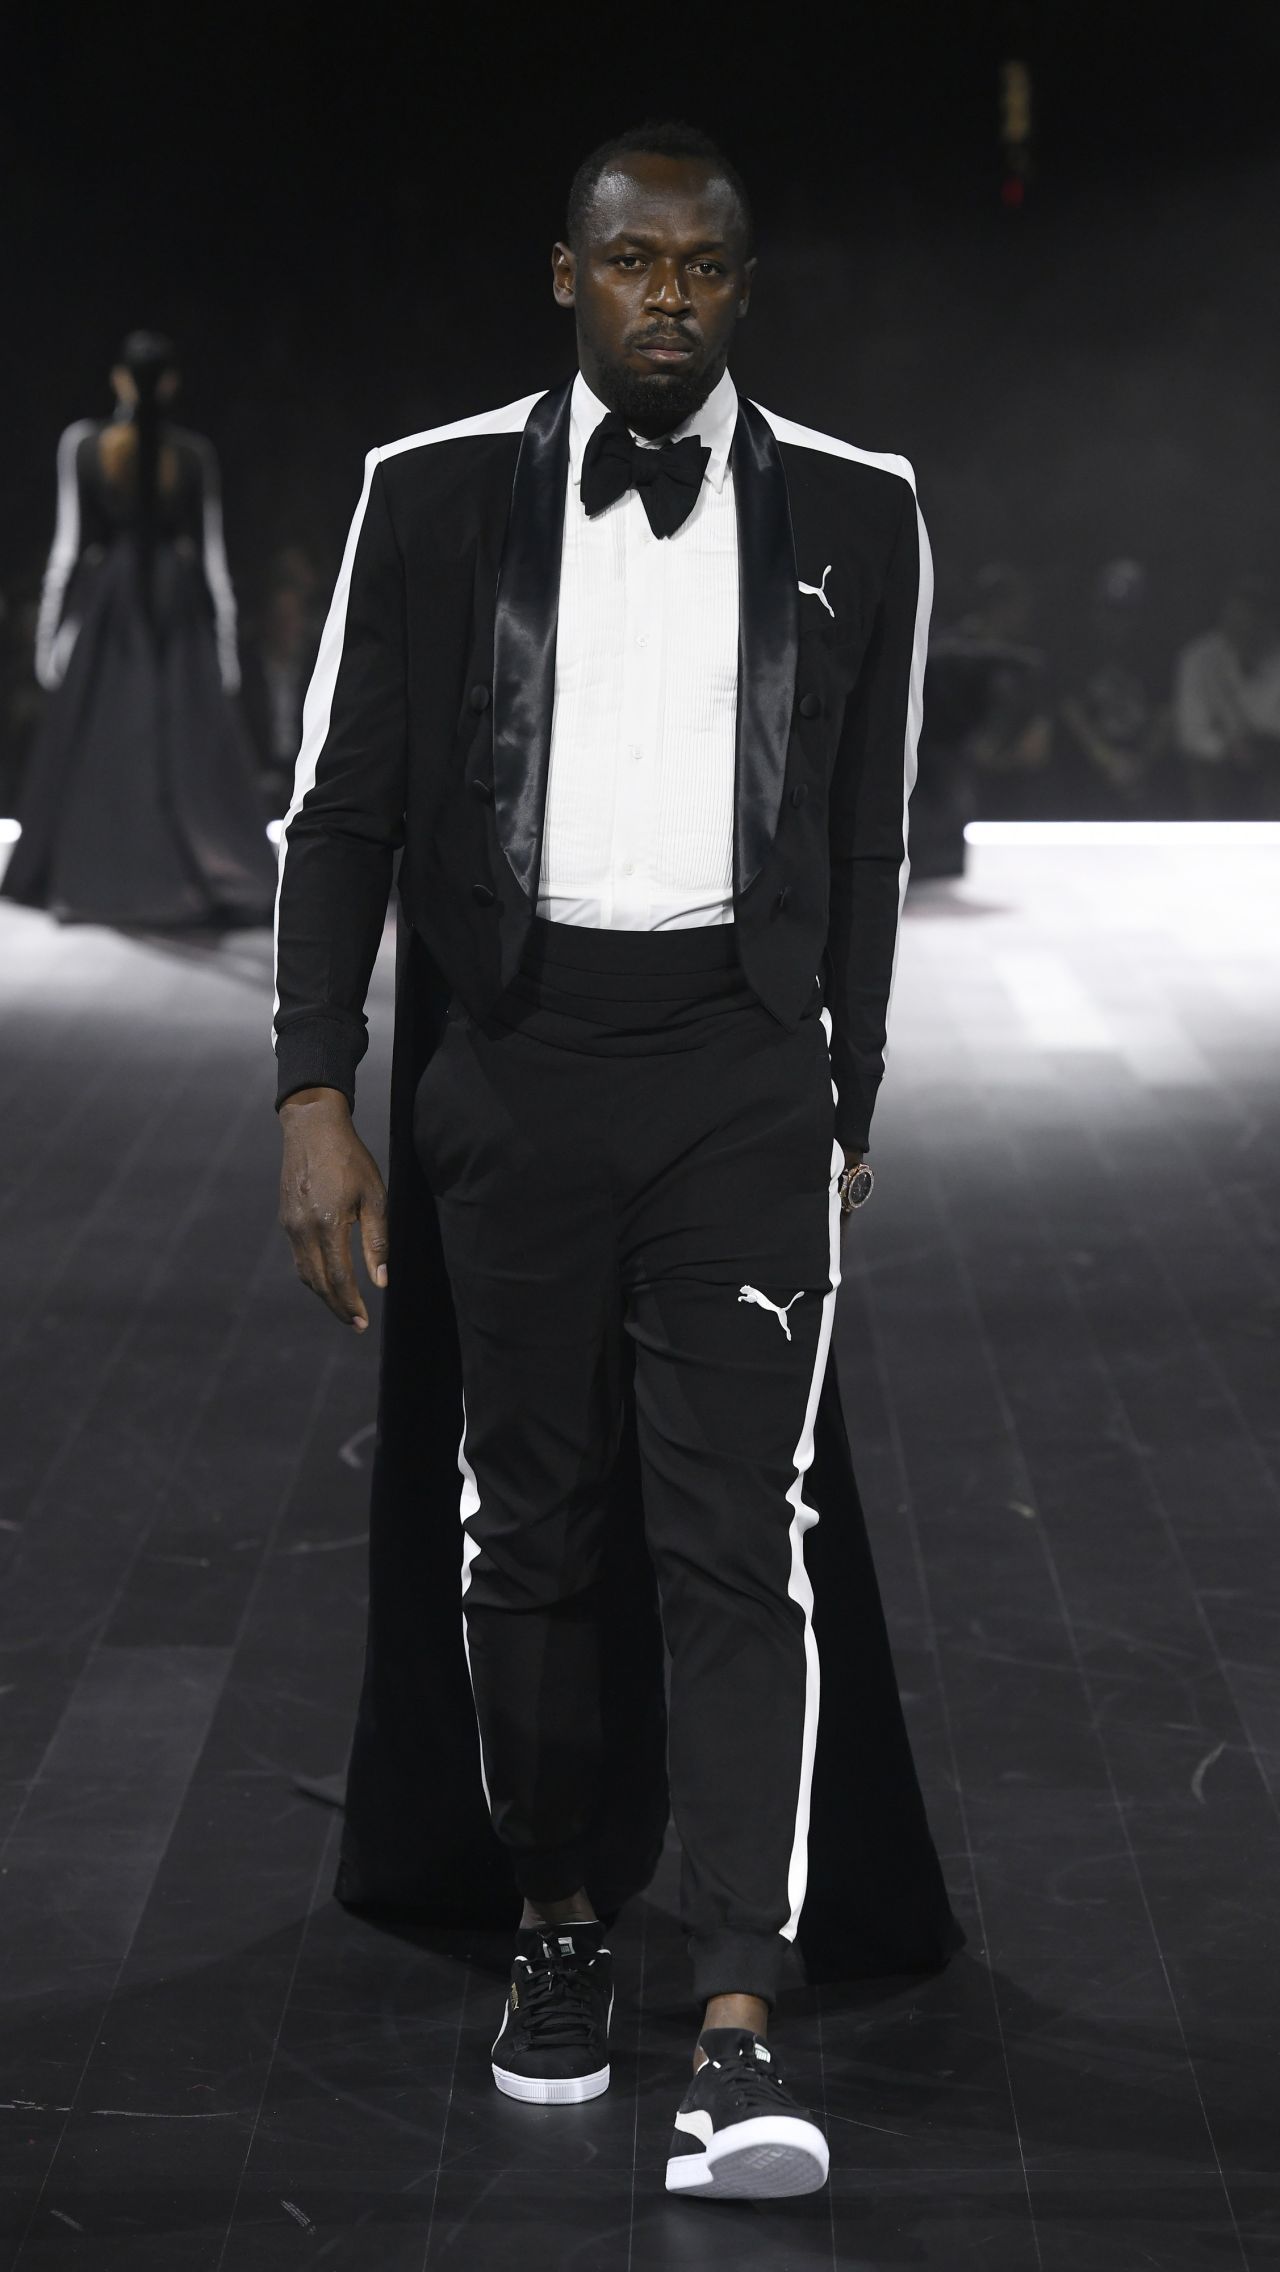 Для показа на Неделе моды бренд привлёк своих главных глобальных амбассадоров из мира спорта: Усэйна Болта, Кайла Кузму.